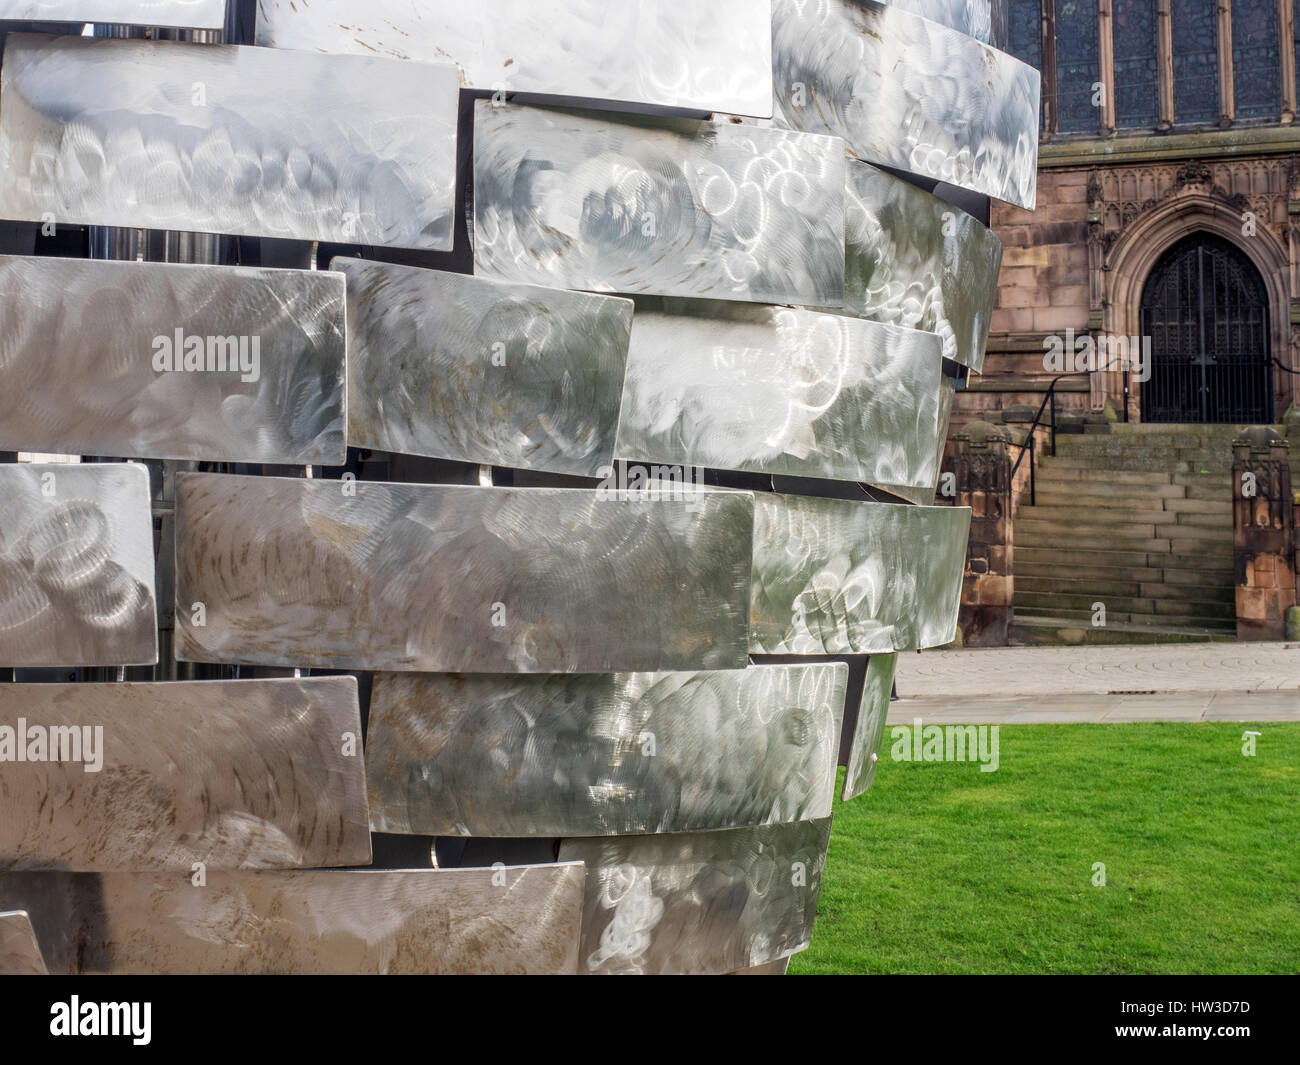 Cuore della scultura in acciaio Replica del cuore per la Yorkshire uomo di acciaio da artista Steve Mehdi in Minster Gardens Rotherham South Yorkshire Englan Foto Stock